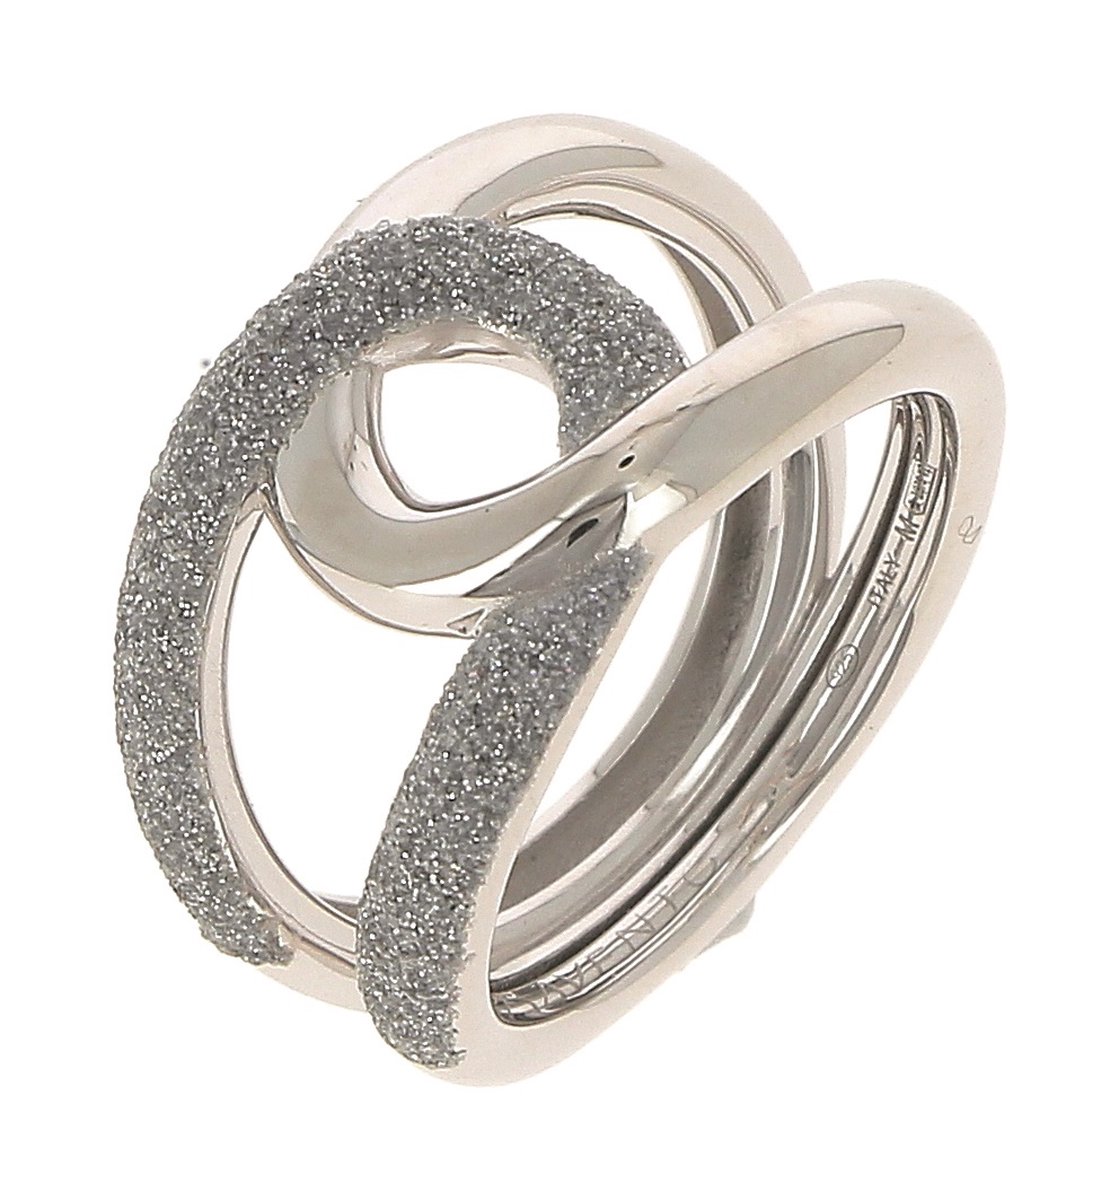 Pesavento ring - WPLVA1862/M - zilver - grey dust emaille - uitverkoop Juwelier Verlinden St. Hubert - van €310,= voor €249,=